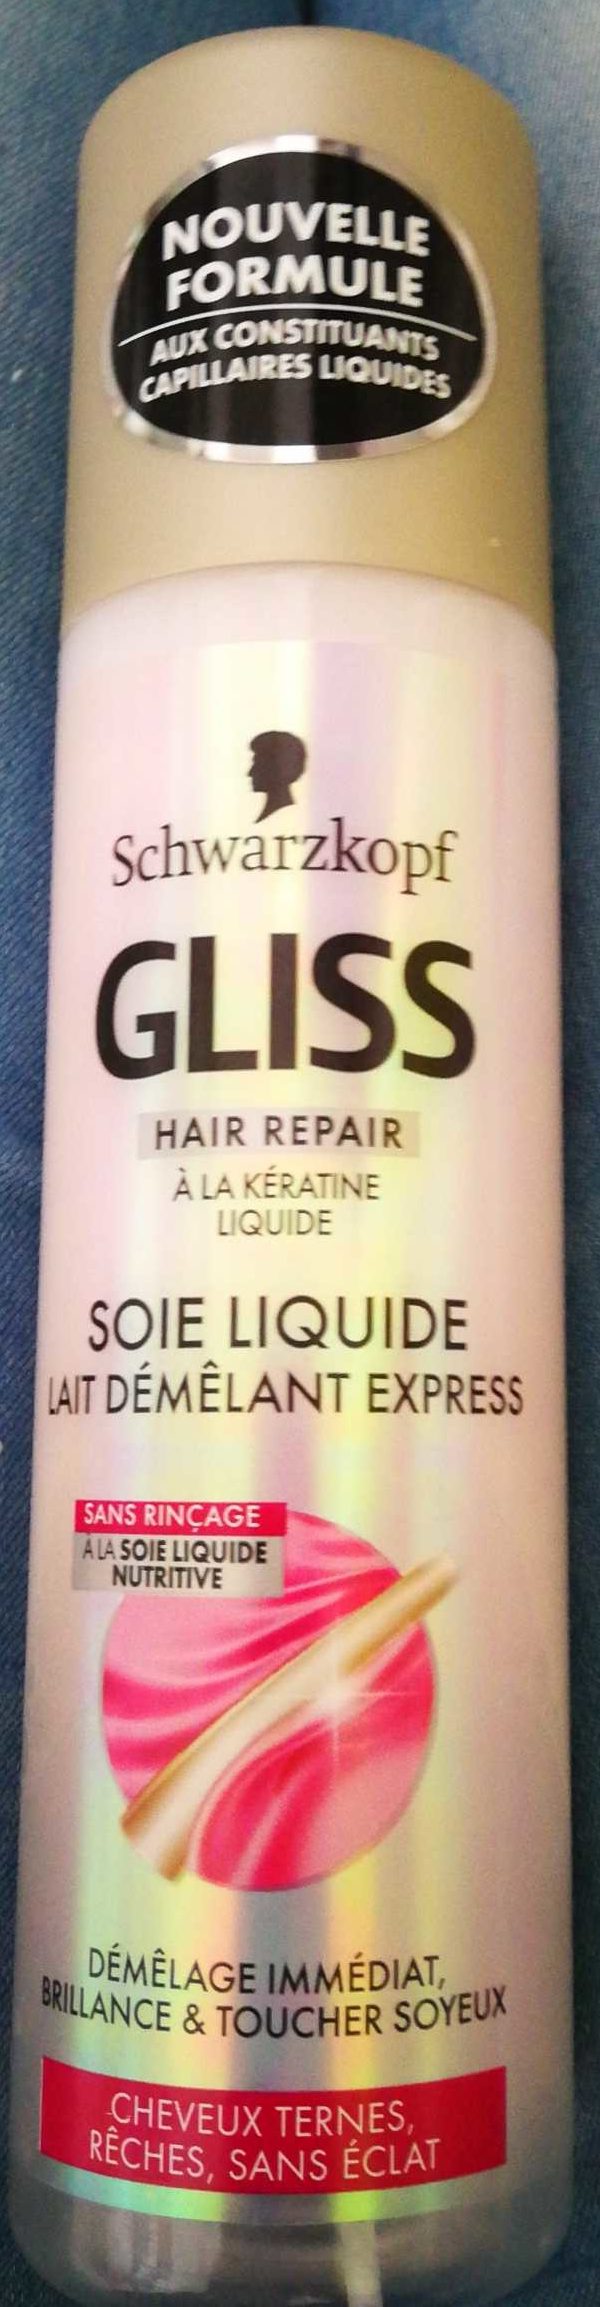 Gliss Soie liquide - מוצר - fr